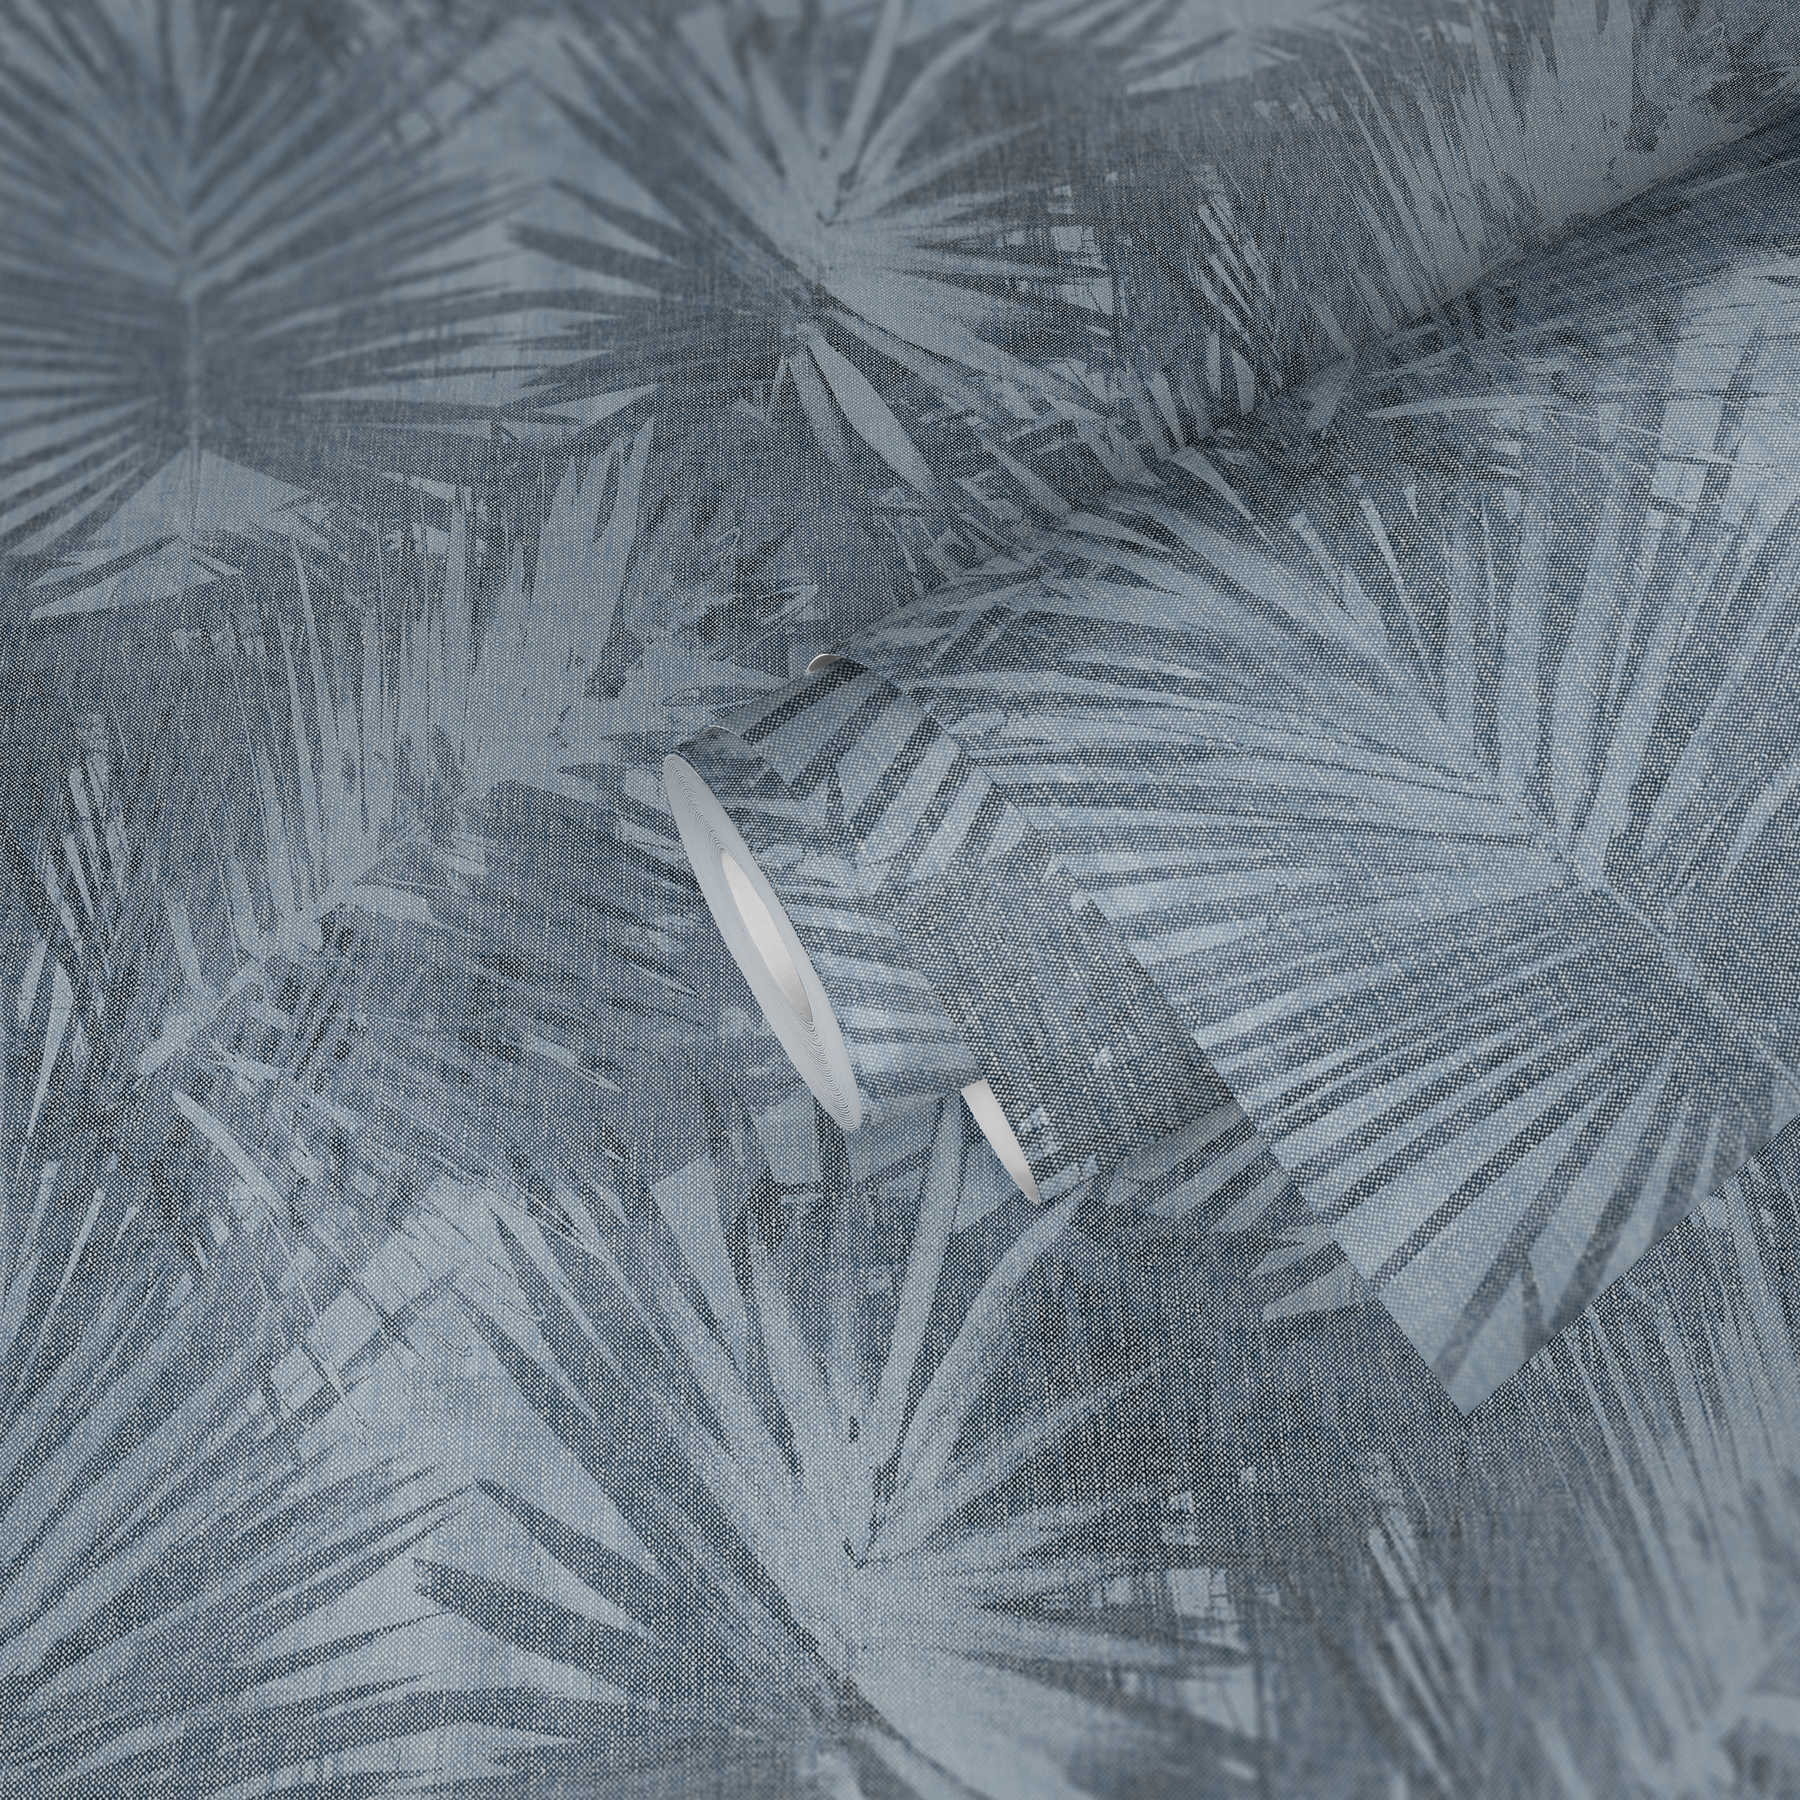             Papel pintado no tejido con aspecto de lino y estampado de hojas naturales - Azul
        